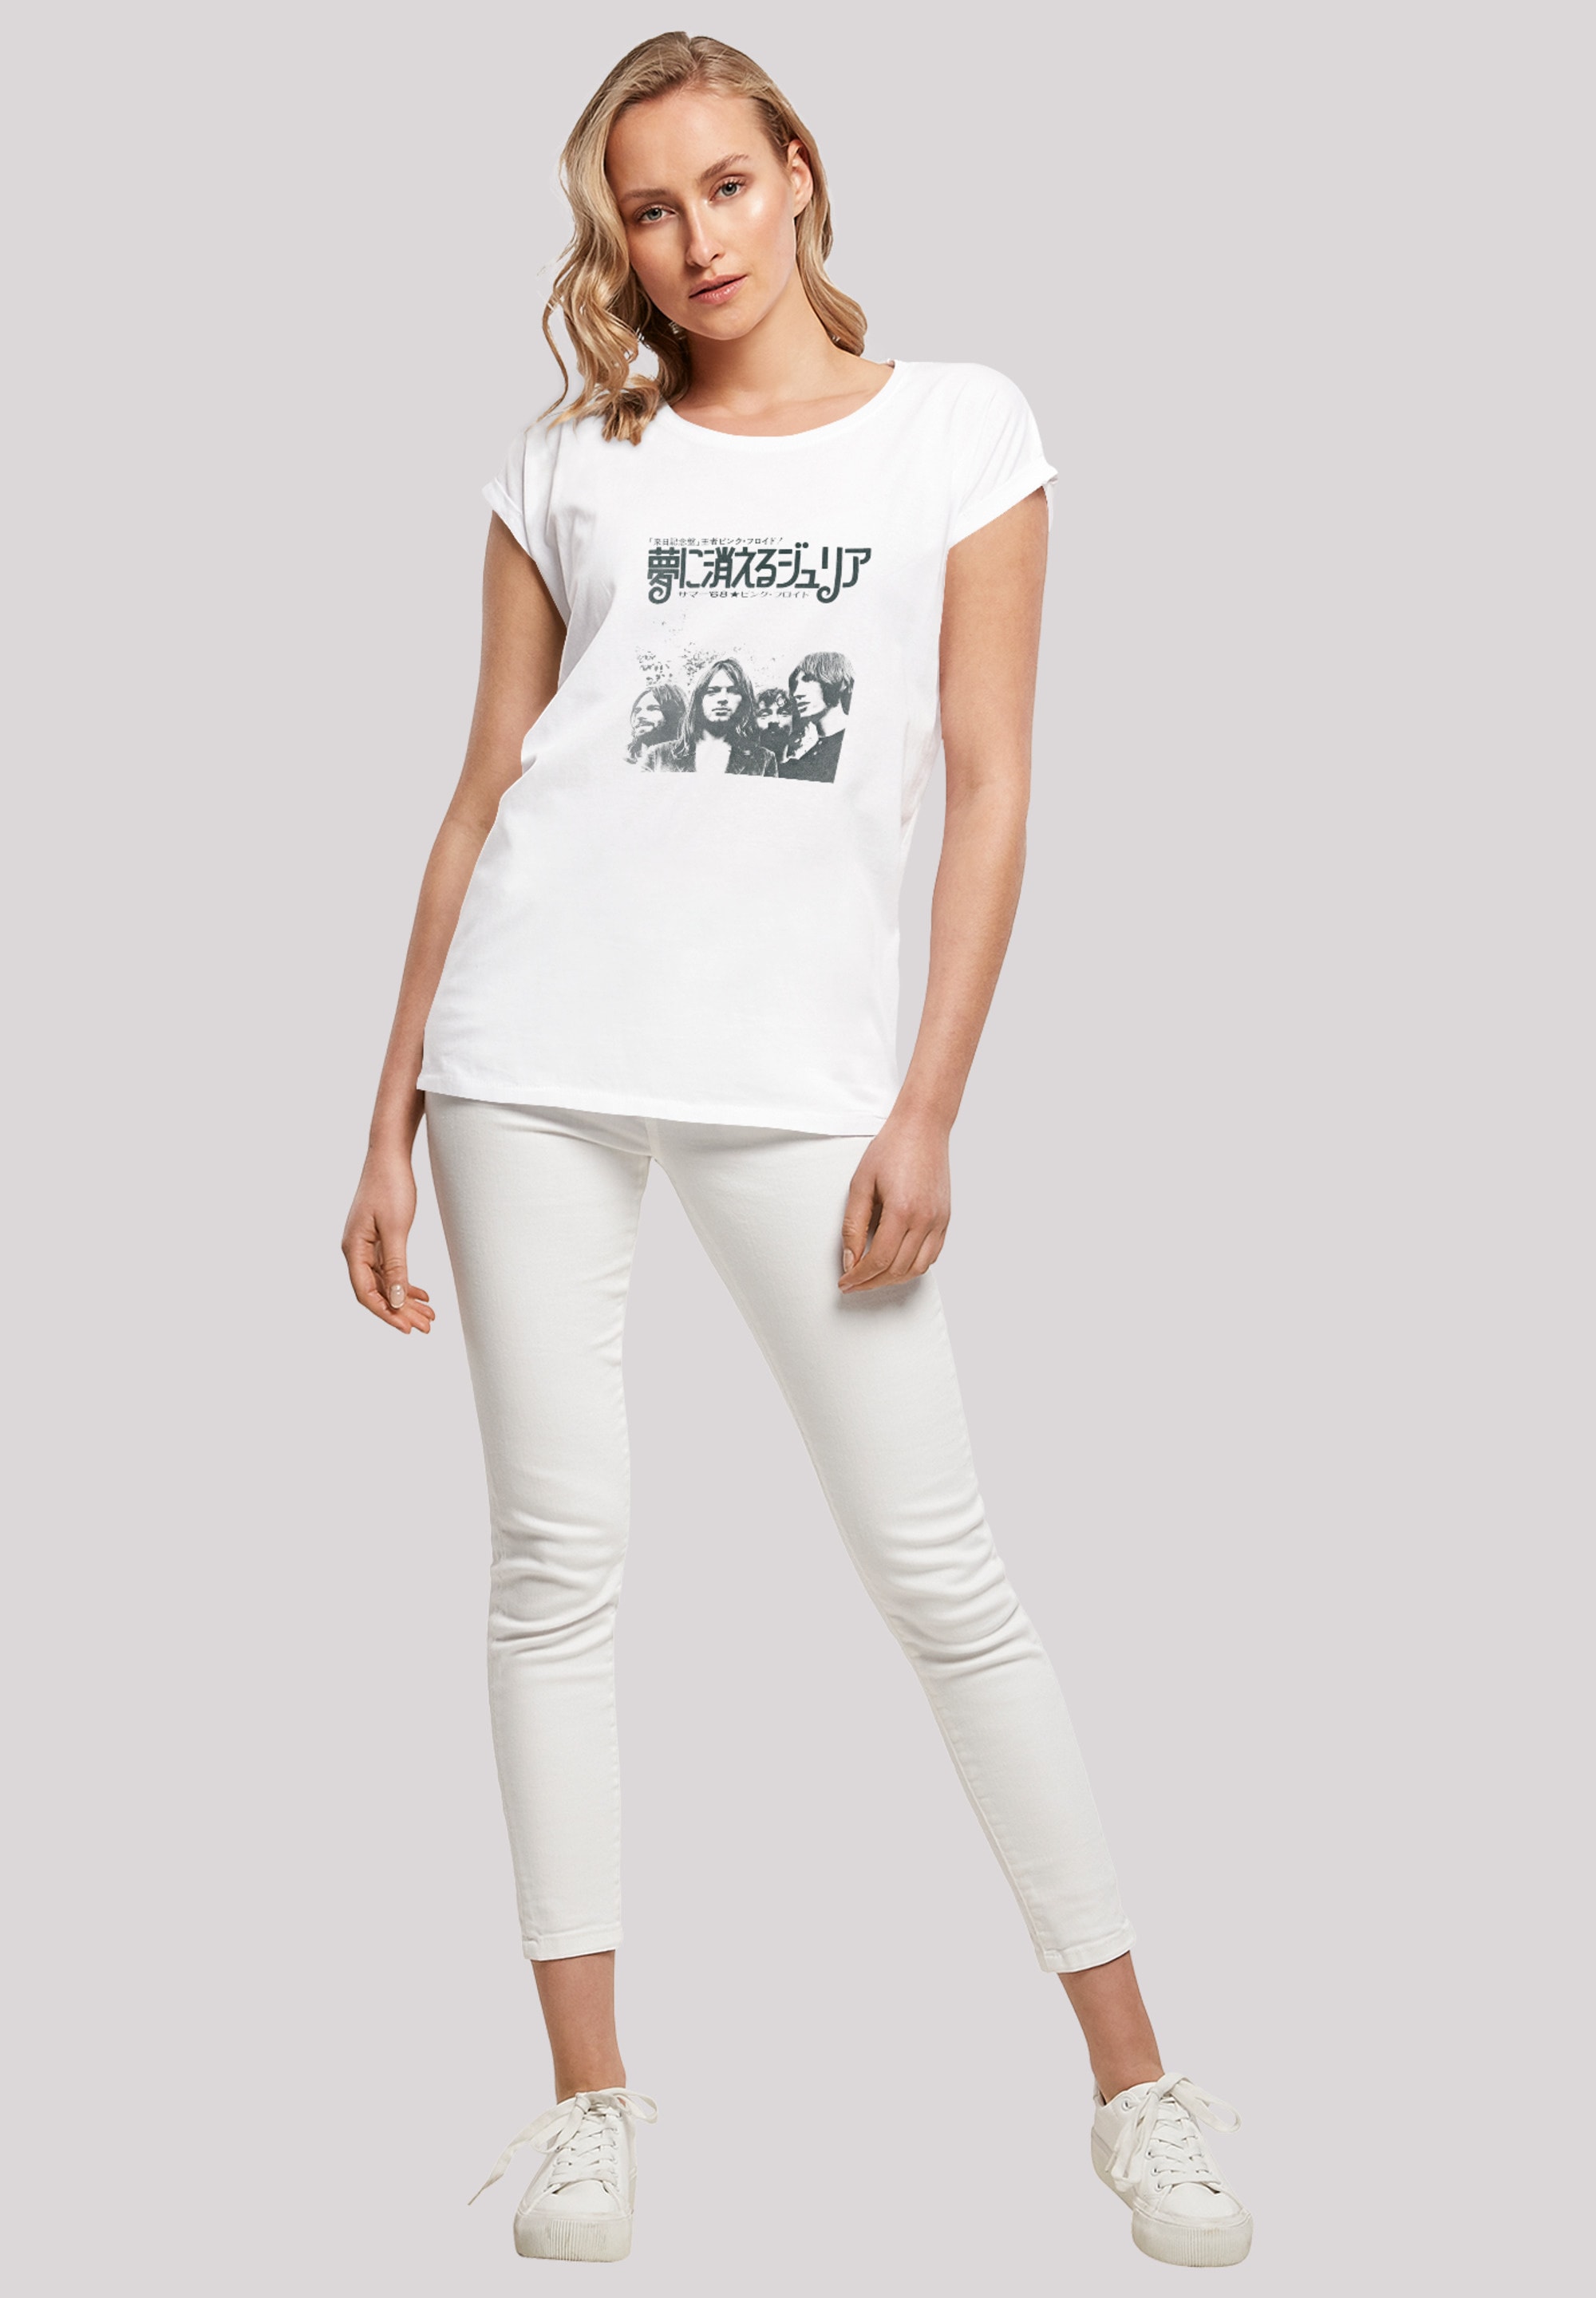 F4NT4STIC T-Shirt Damen,Premium Vintage Dream Merch«, BAUR - Ärmel,Bandshirt Summer | Floyd kaufen Rock Julia Pink Merch,Regular-Fit,Kurze »The online